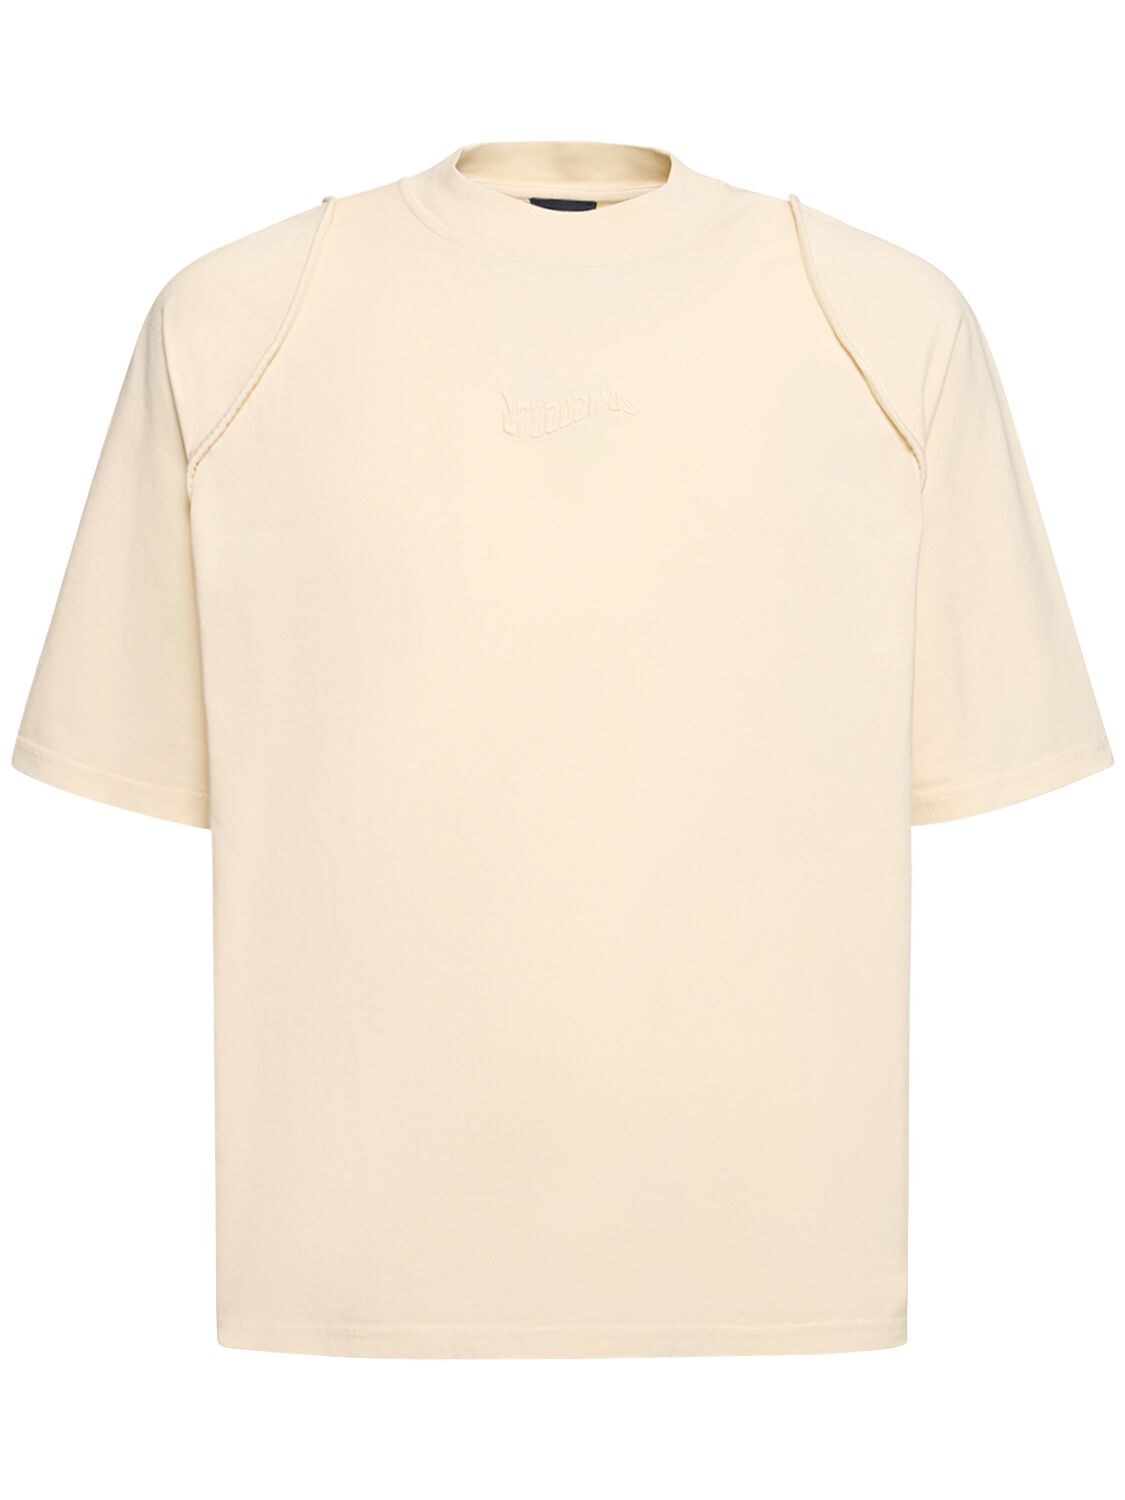 Jacquemus Le Tshirt Camargue Cotton  T-shirt In Neutral